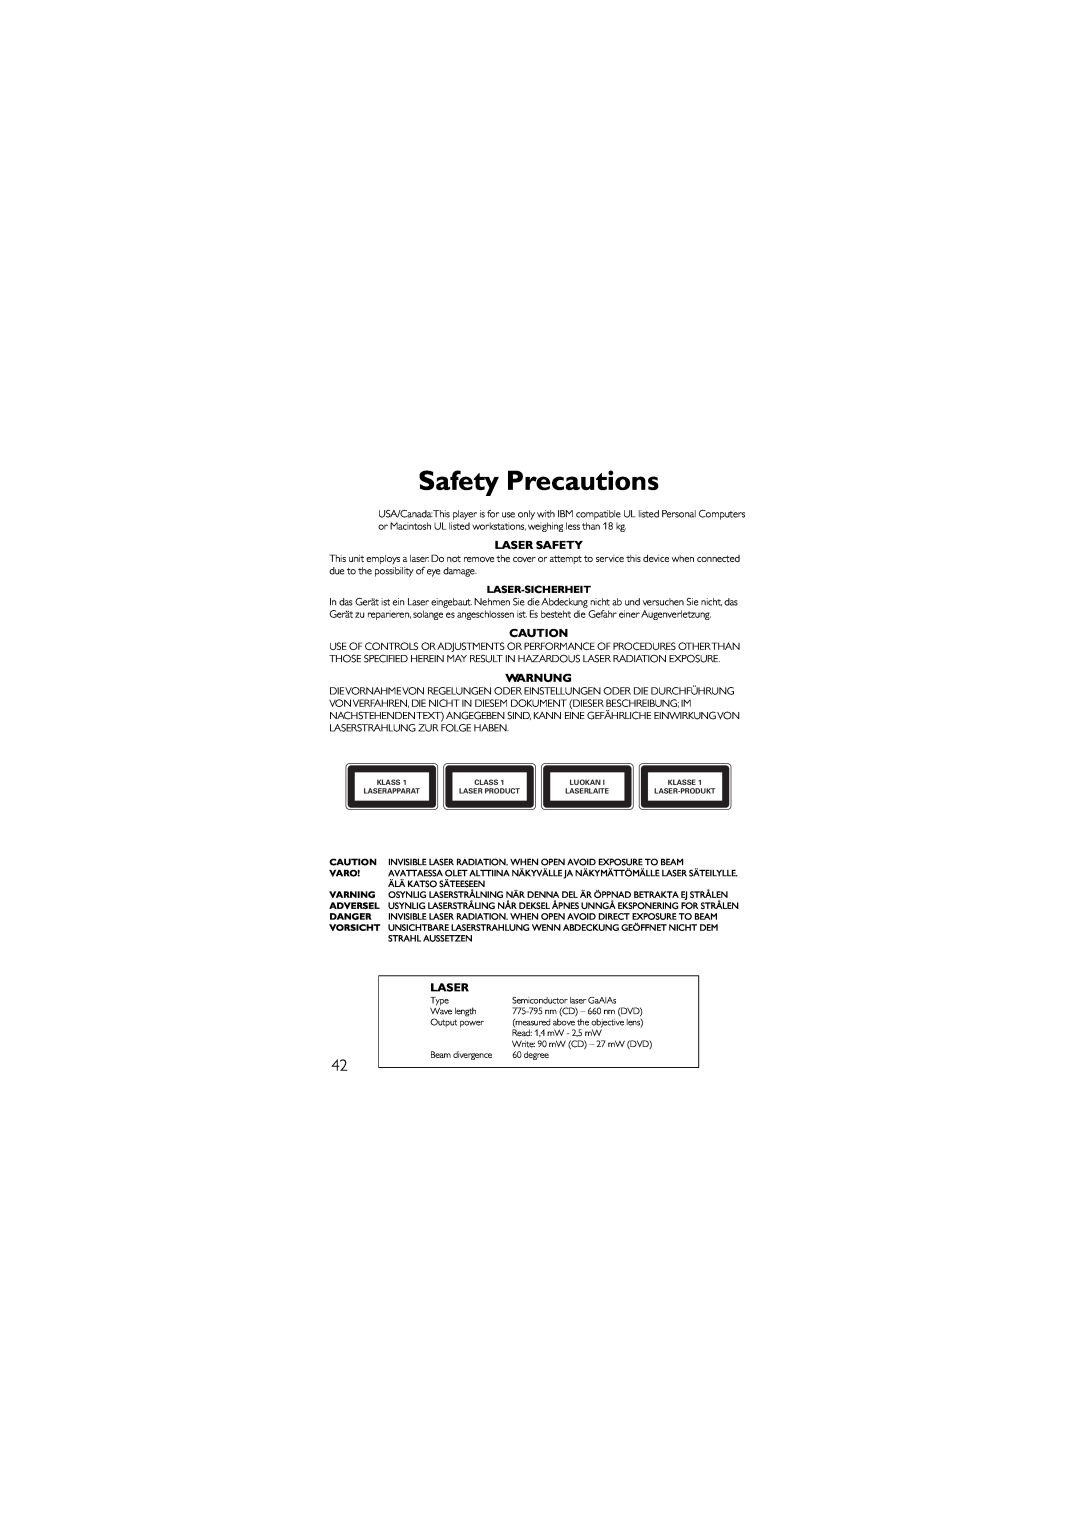 Philips 9305 125 2477.5, SJ/T11363 manual Safety Precautions, Laser Safety, Warnung, Laser-Sicherheit 